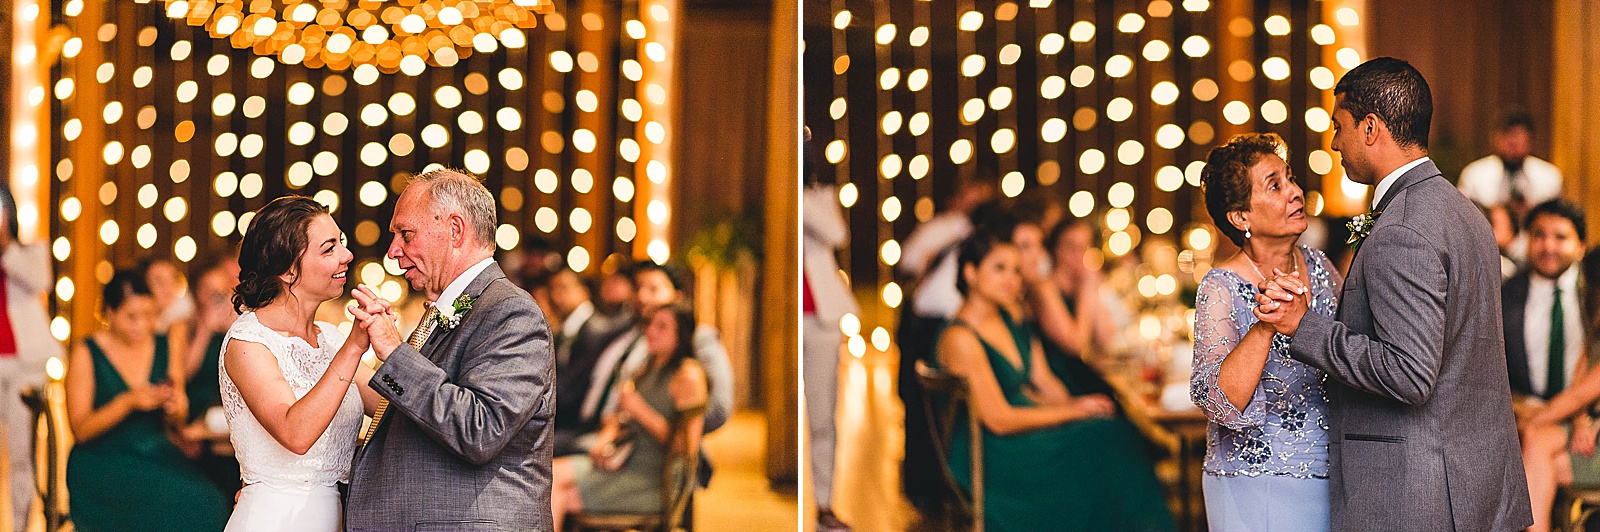 34 dances at wedding - Wedding at Bridgeport Art Center // Kylie + Sean